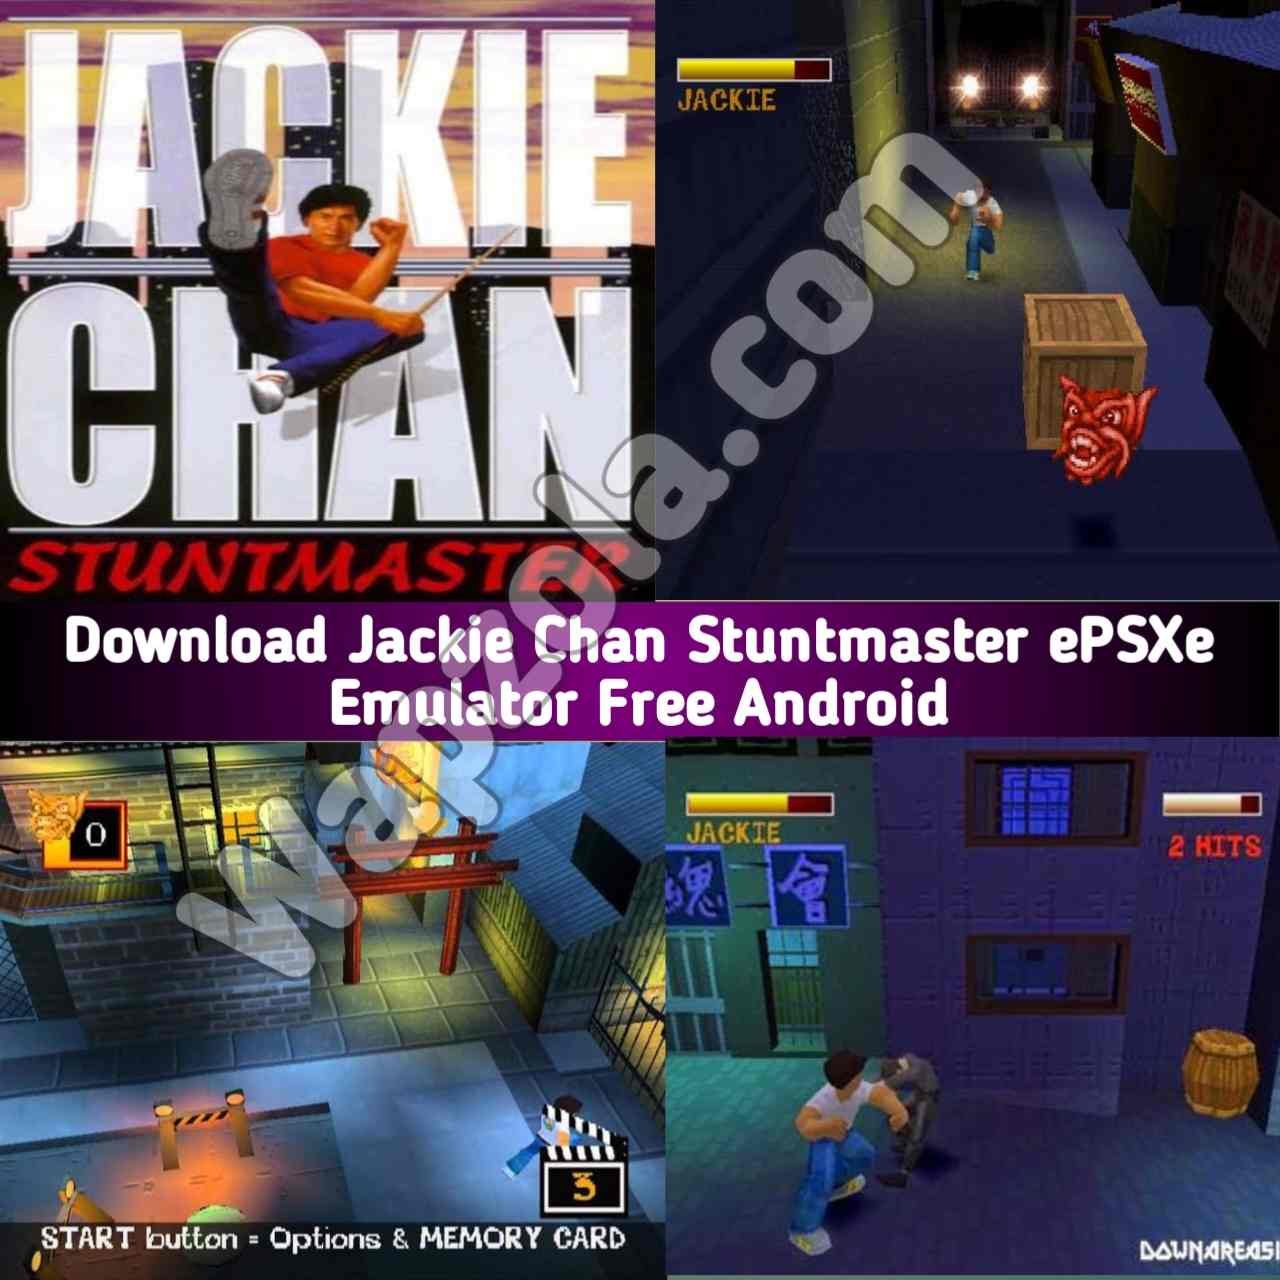 [Descargar] Jackie Chan Stuntmaster ROM (ISO) ePSXe y emulador Fpse (tamaño 35 MB) altamente comprimido – Sony Playstation / PSX / PS1 APK BIN/CUE play en Android y PC 5